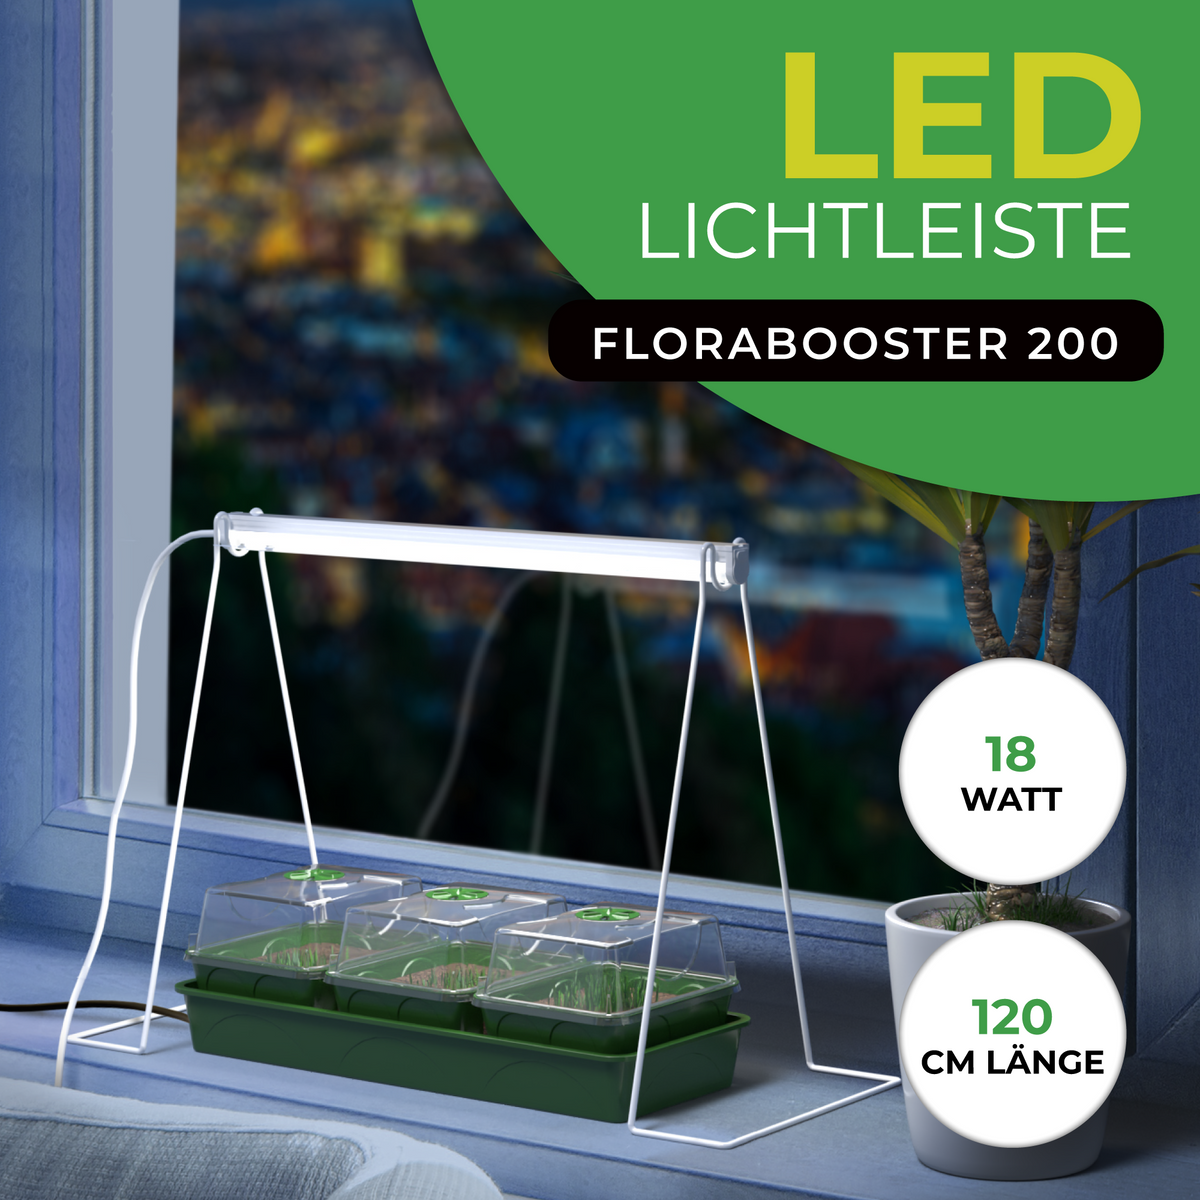 Bio Green LED-Lichtleiste für Pflanzen Florabooster 200 - 120 cm